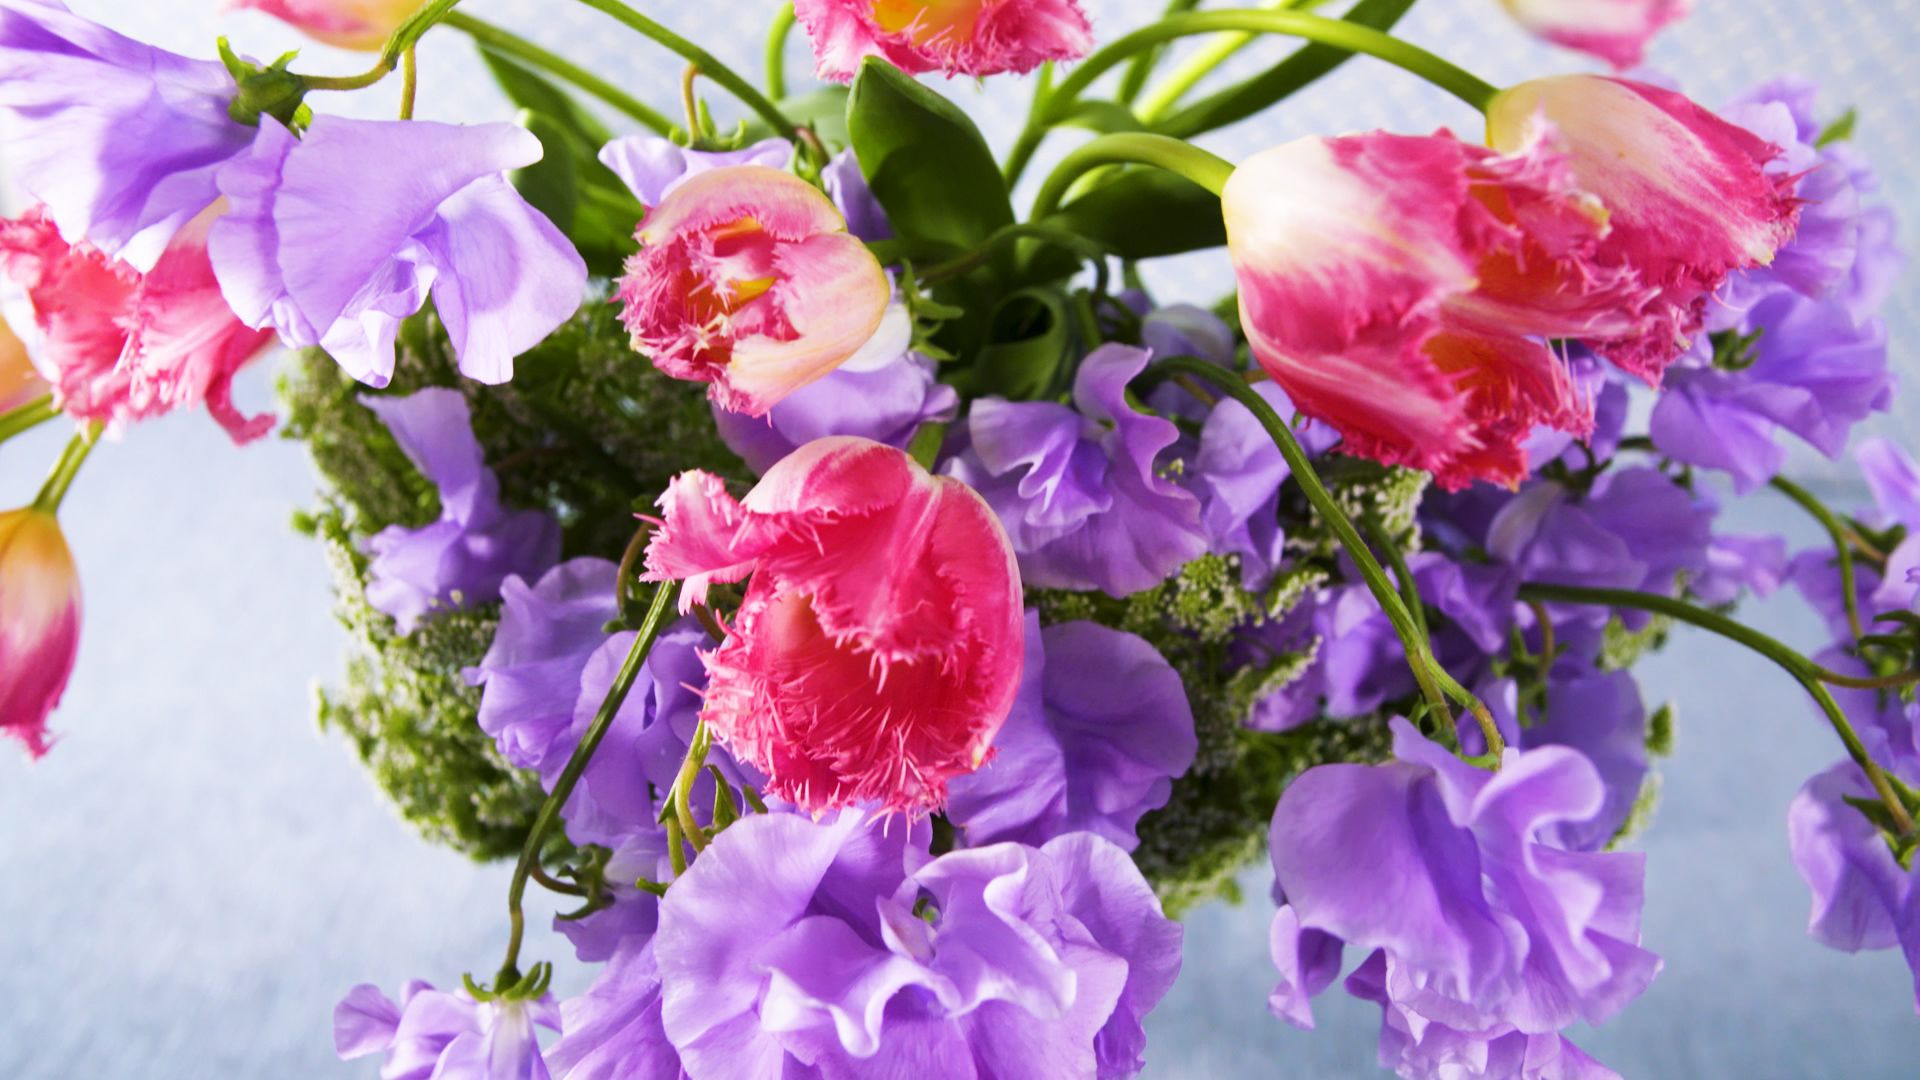 Ideas modernas y especiales para decorar tu casa con flores secas   Decoración de unas, Decorar con flores artificiales, Decoracion con plantas  artificiales